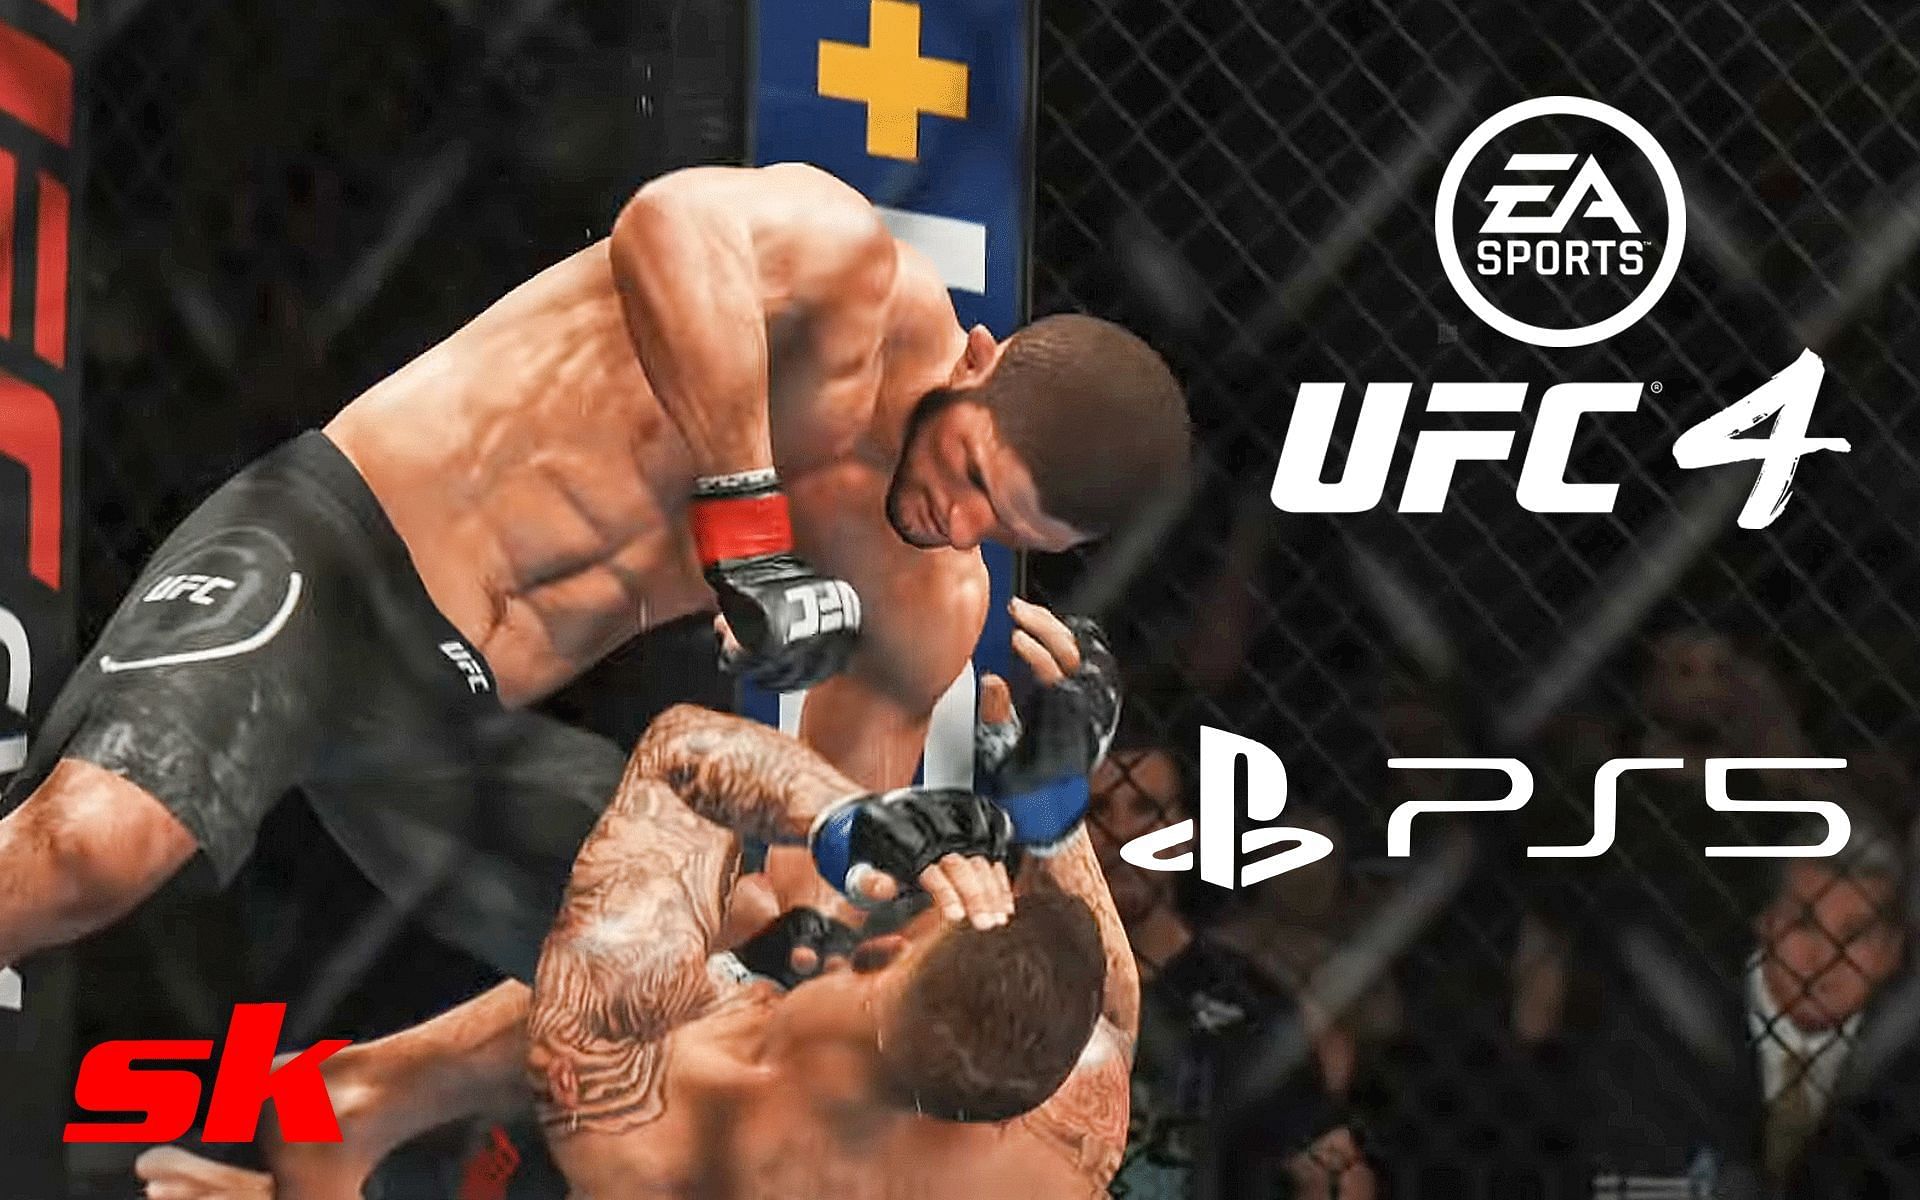 Go Inside EA's UFC 4